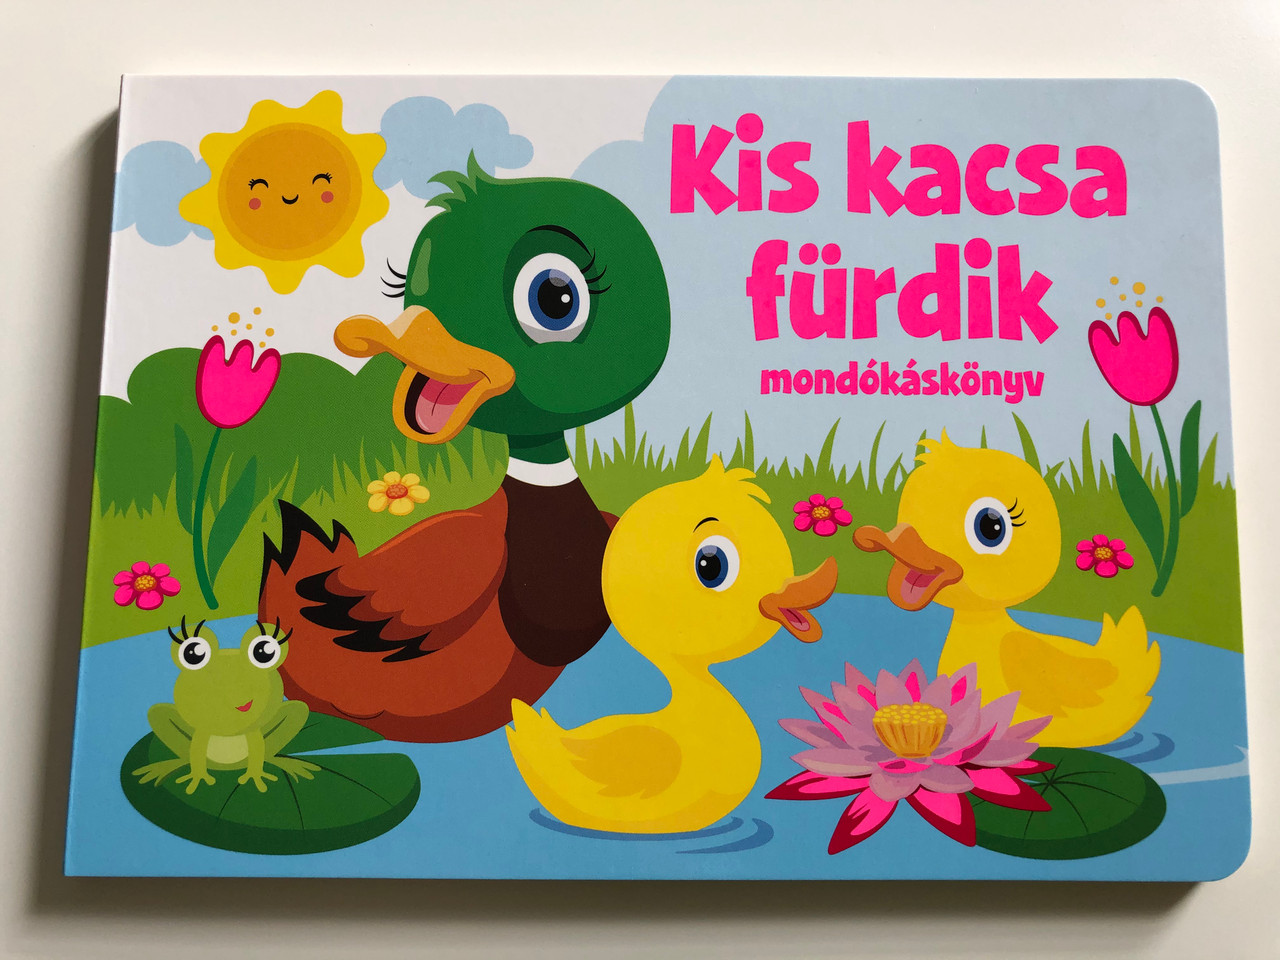 Kis kacsa fürdik - mondókáskönyv by Duzs Mária / Hungarian rhyme book / Szalay  Könyvek - Pannon-Literatúra 2020 / Board book - bibleinmylanguage